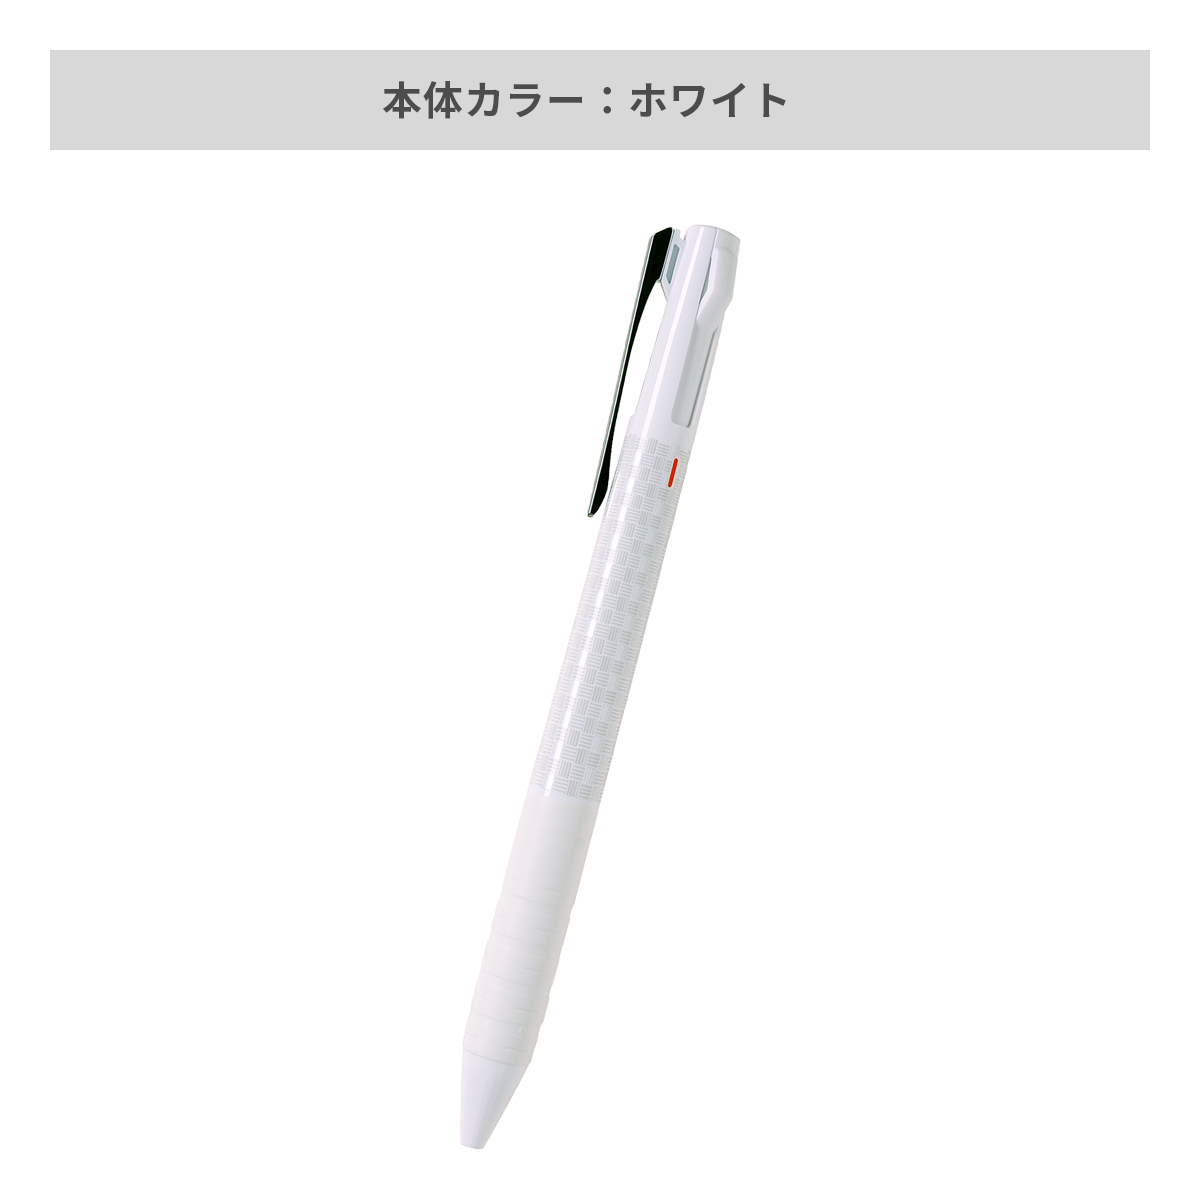 三菱鉛筆 ジェットストリーム スリムコンパクト 3色ボールペン 0.5mm【名入れボールペン / パッド印刷】 画像4